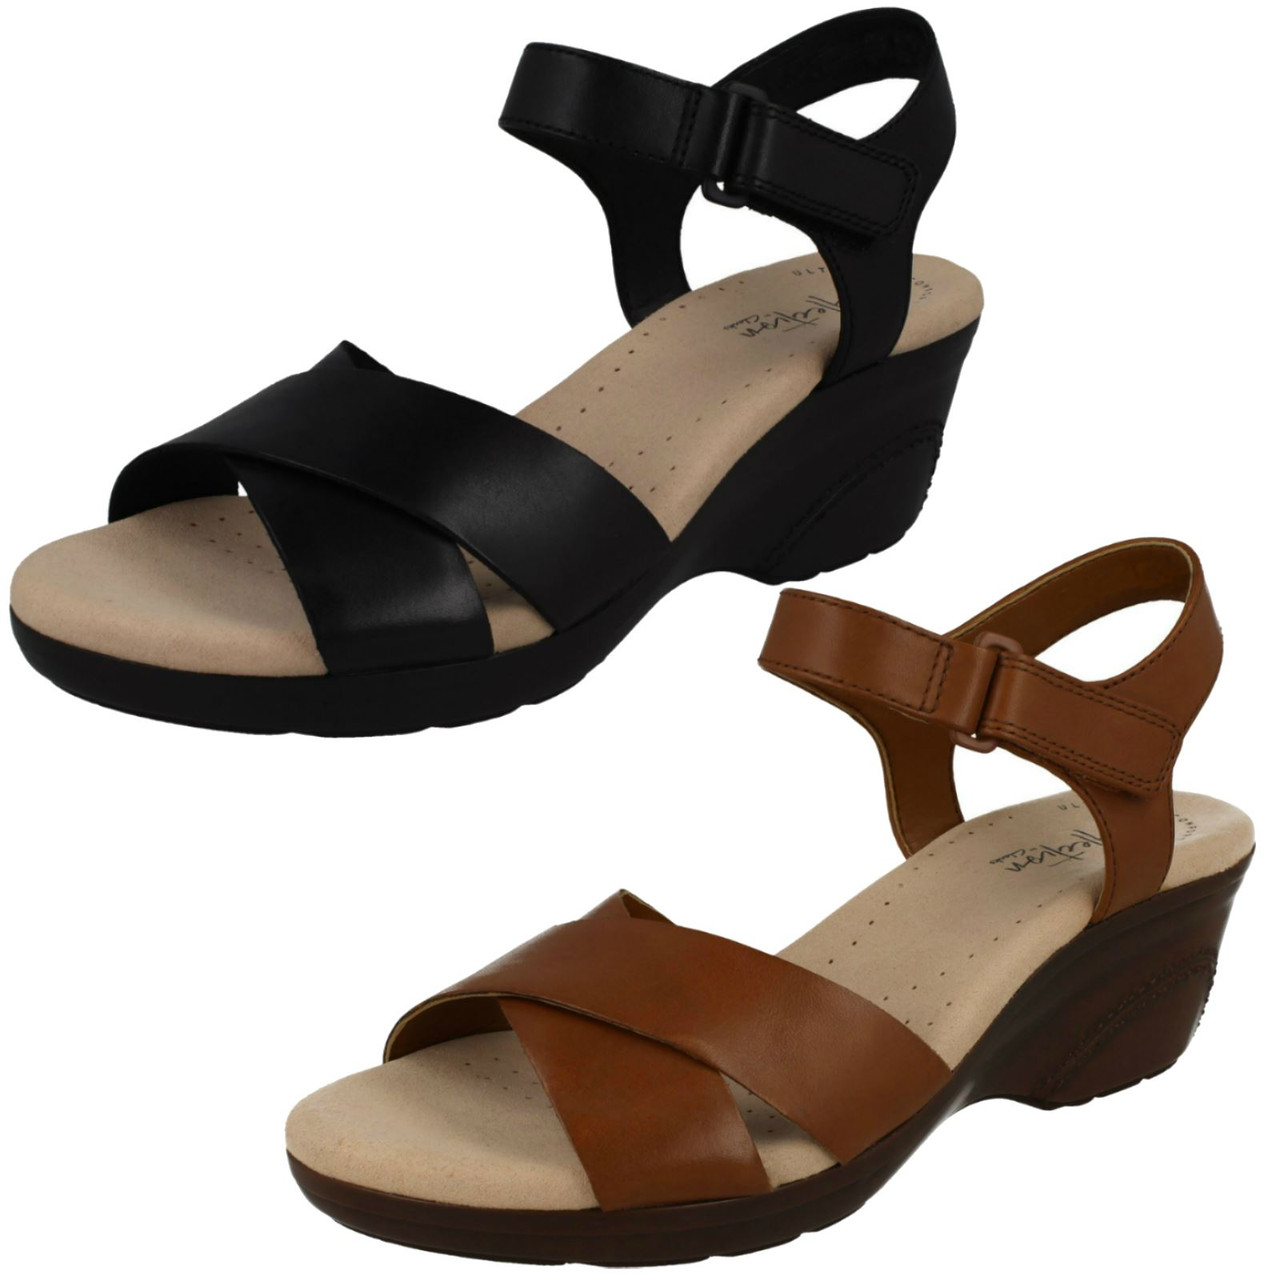 clarks ladies black wedge sandals